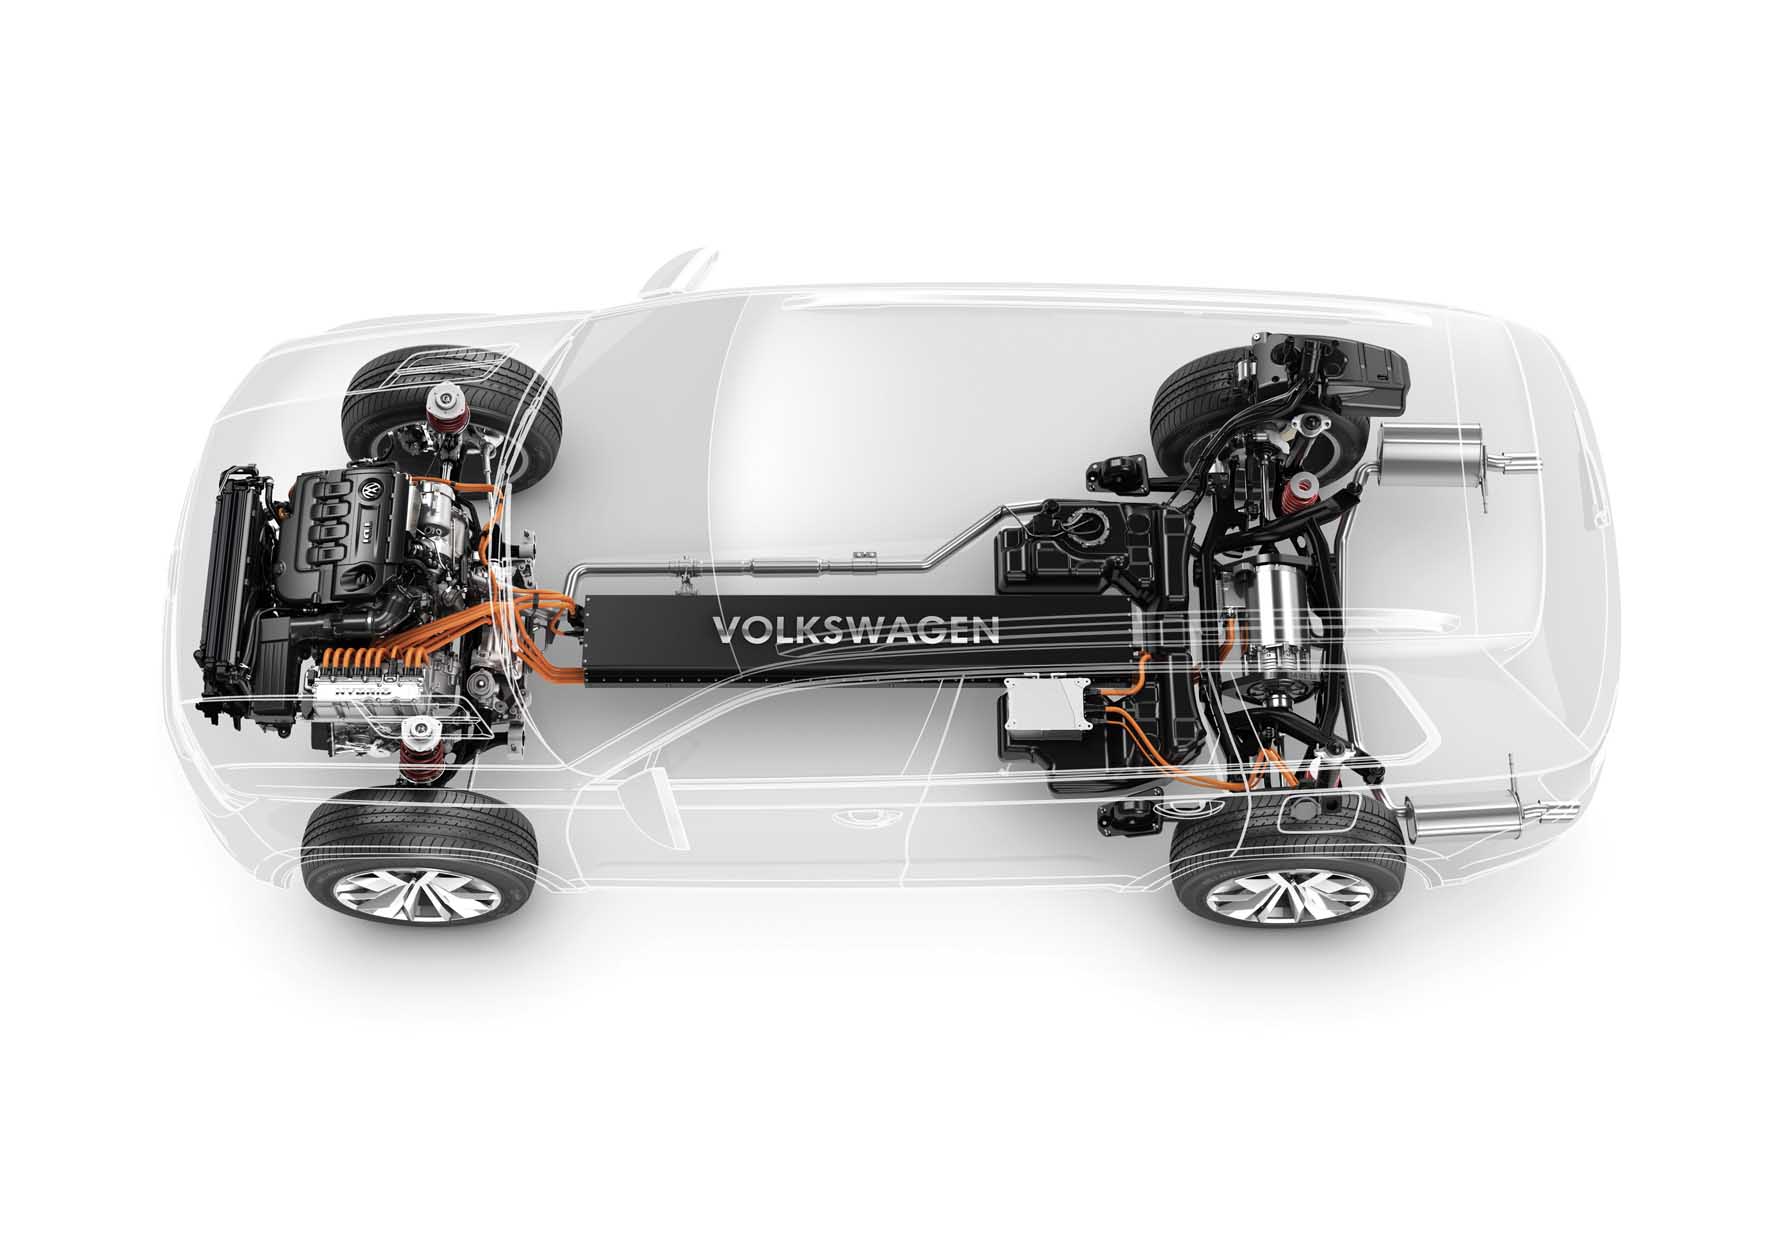 Volkswagen 2013 prototipo Suv CrossBlue trasparenza tecnica